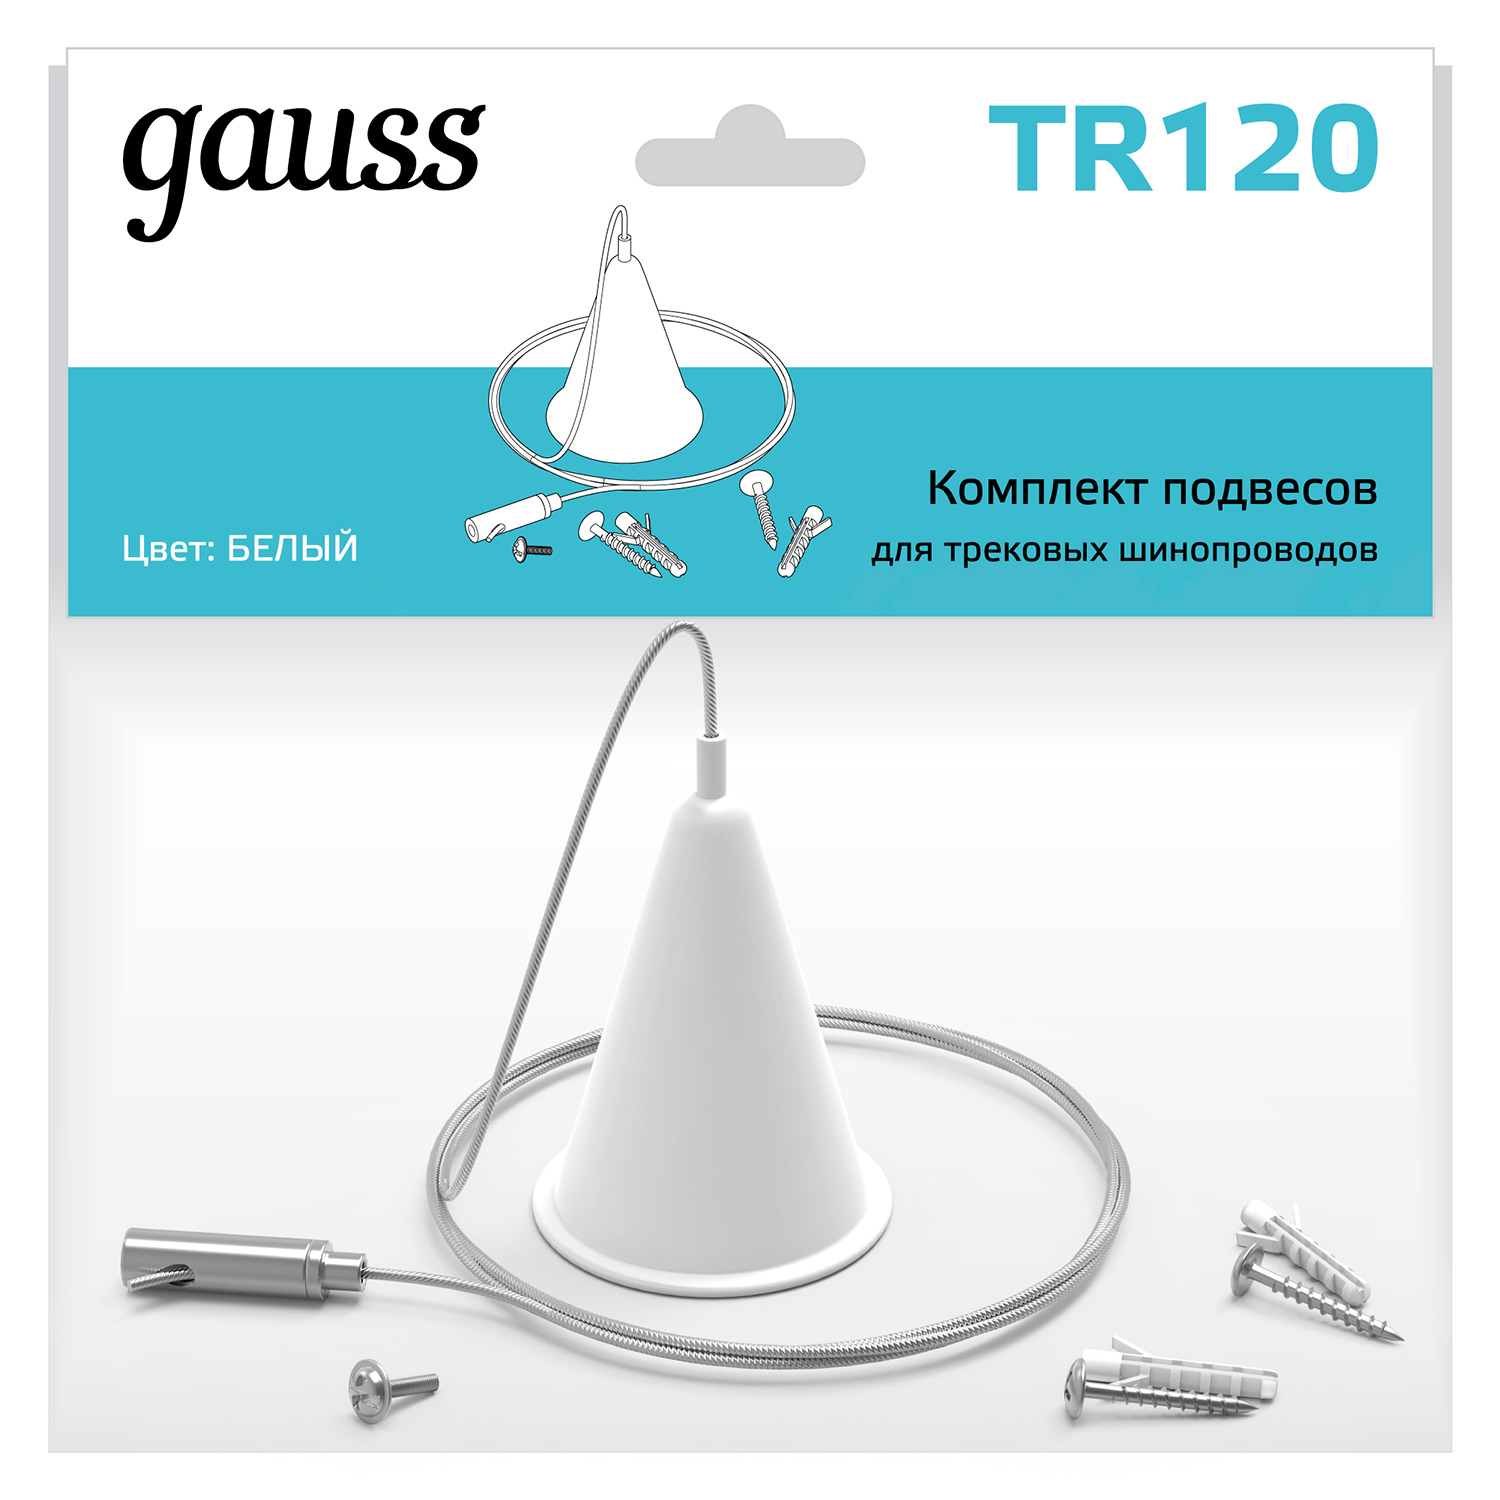 gauss комплект подвесов для трековых шинопроводов gauss цвет белый tr120 Комплект подвесов для трековых шинопроводов Gauss, цвет белый